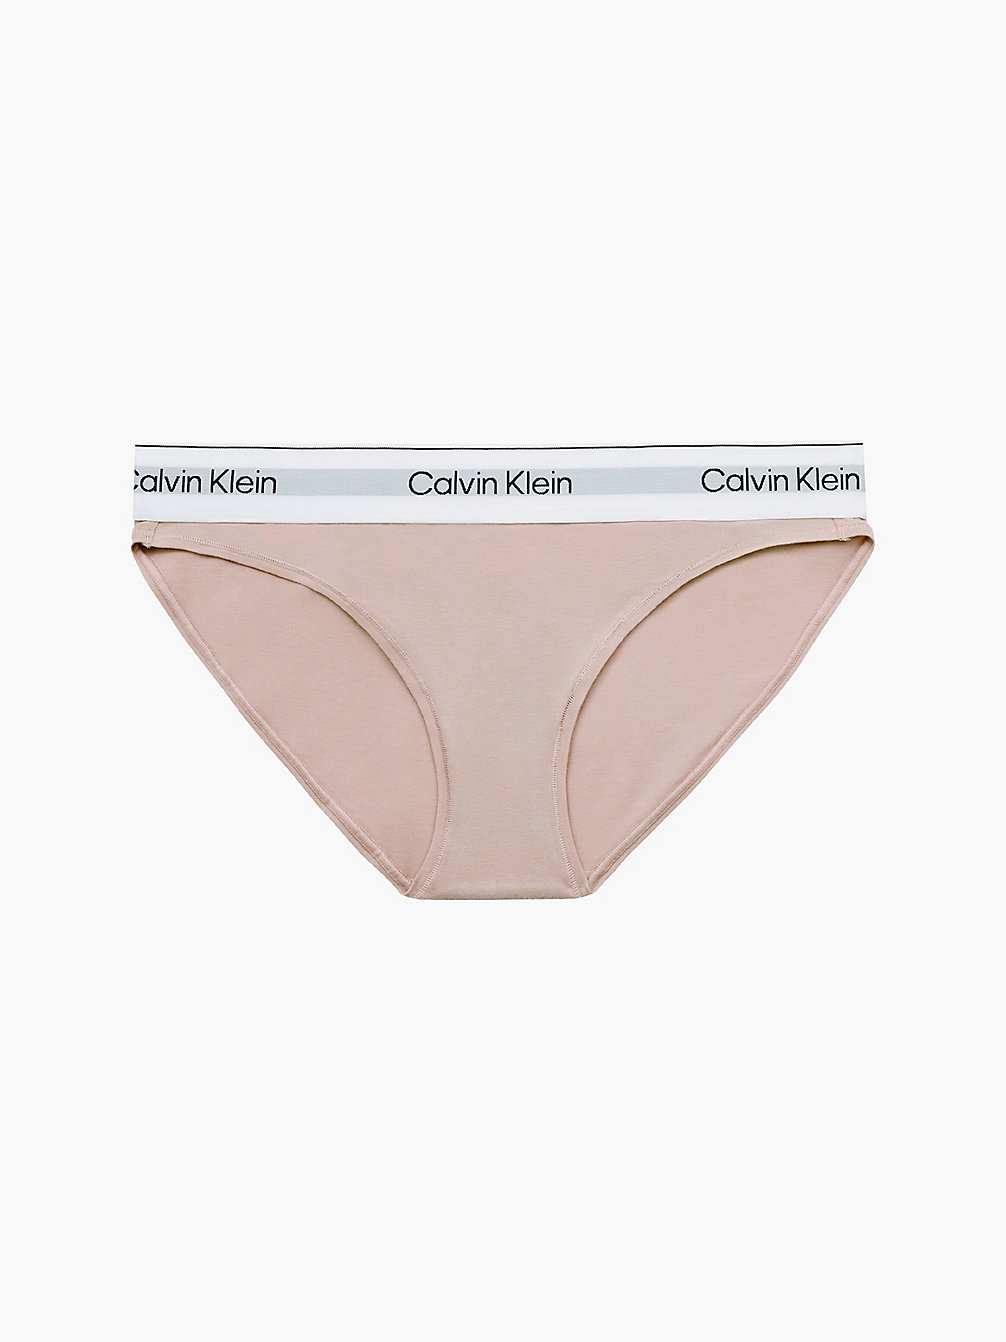 CEDAR > Slip – Modern Cotton > undefined Damen - Calvin Klein